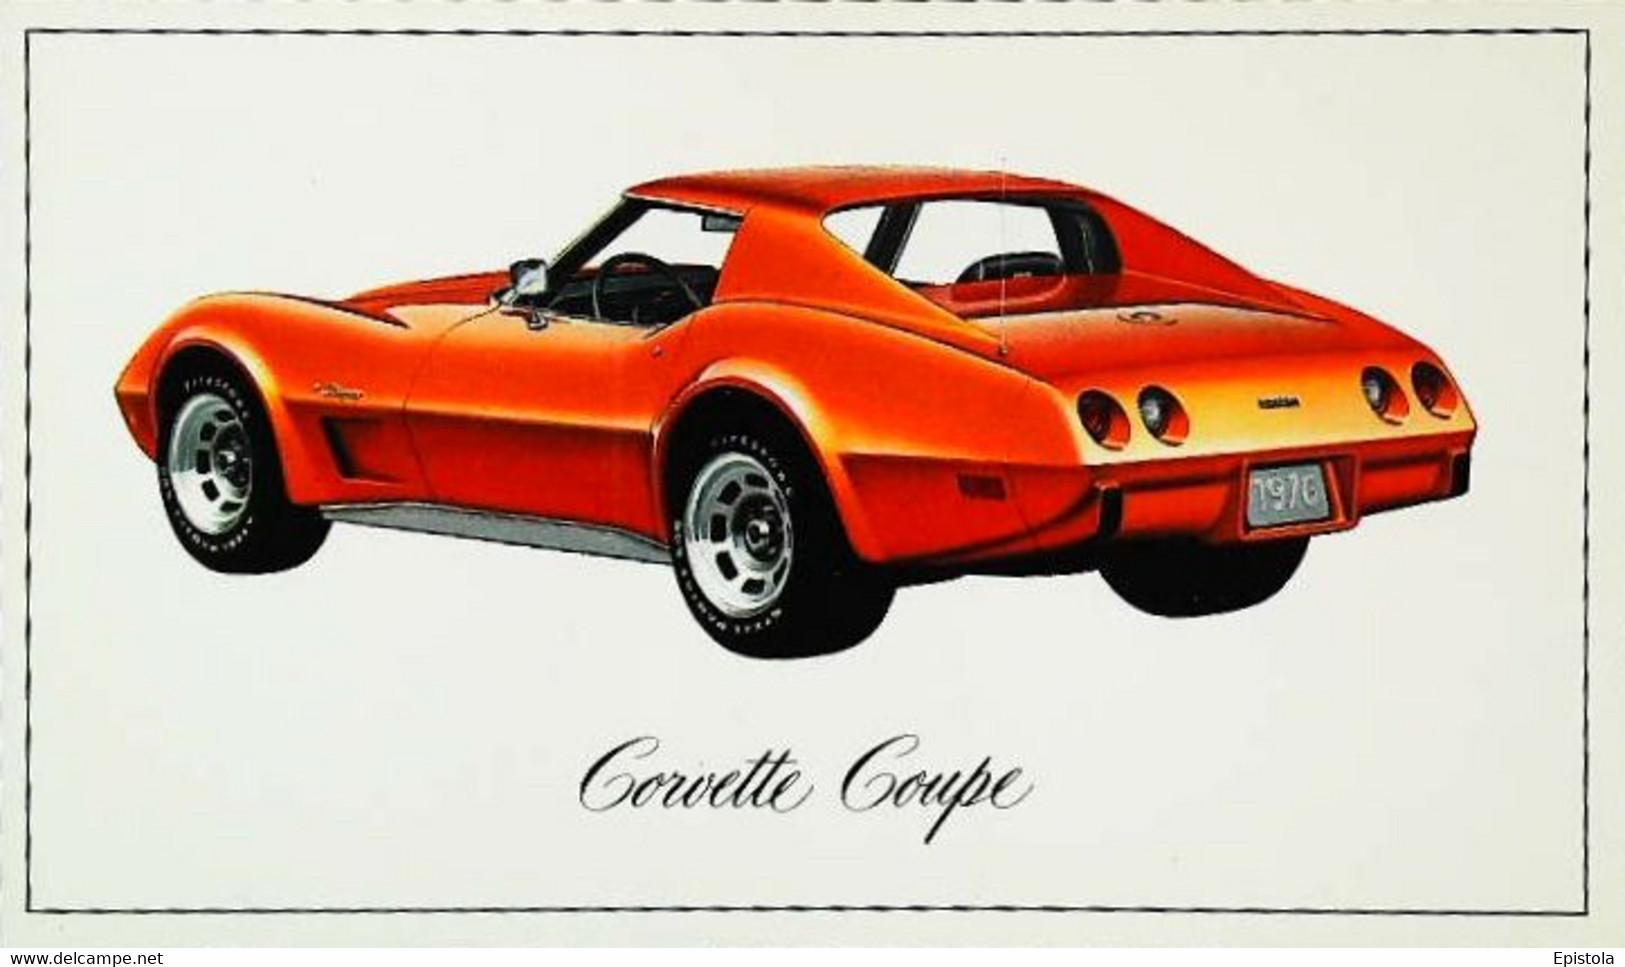 ► CORVETTE Coupé Chevrolet 1976 - Publicité Automobile Américaine (Litho. U.S.A.) - Roadside - American Roadside